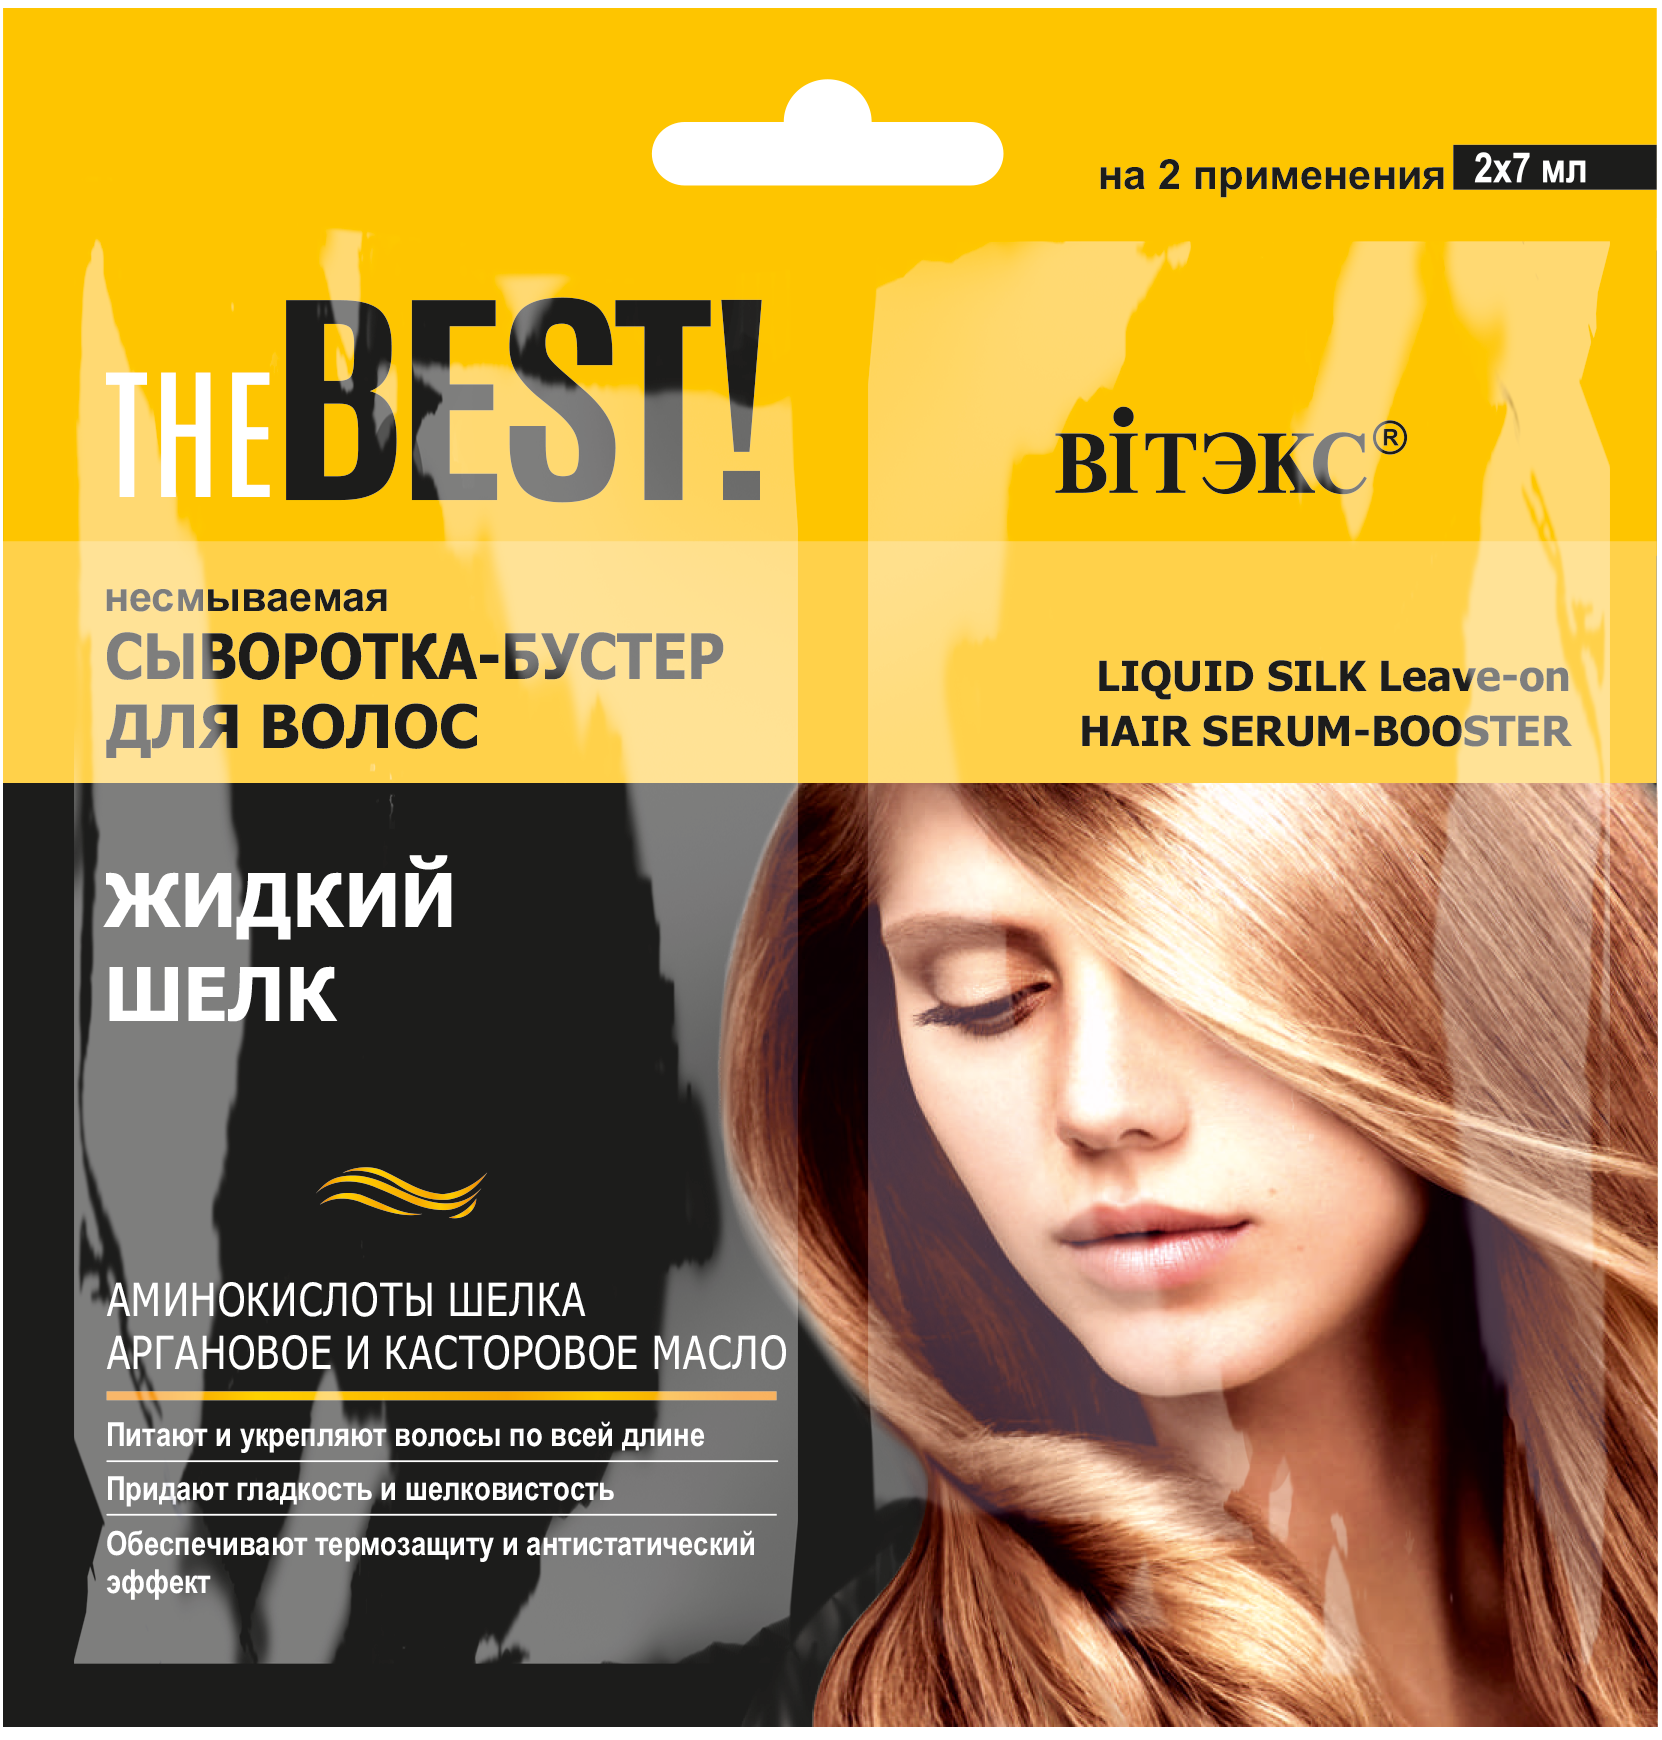 THE BEST! Несмываемая сыворотка-бустер для волос ЖИДКИЙ ШЕЛК, 2х7 мл., саше